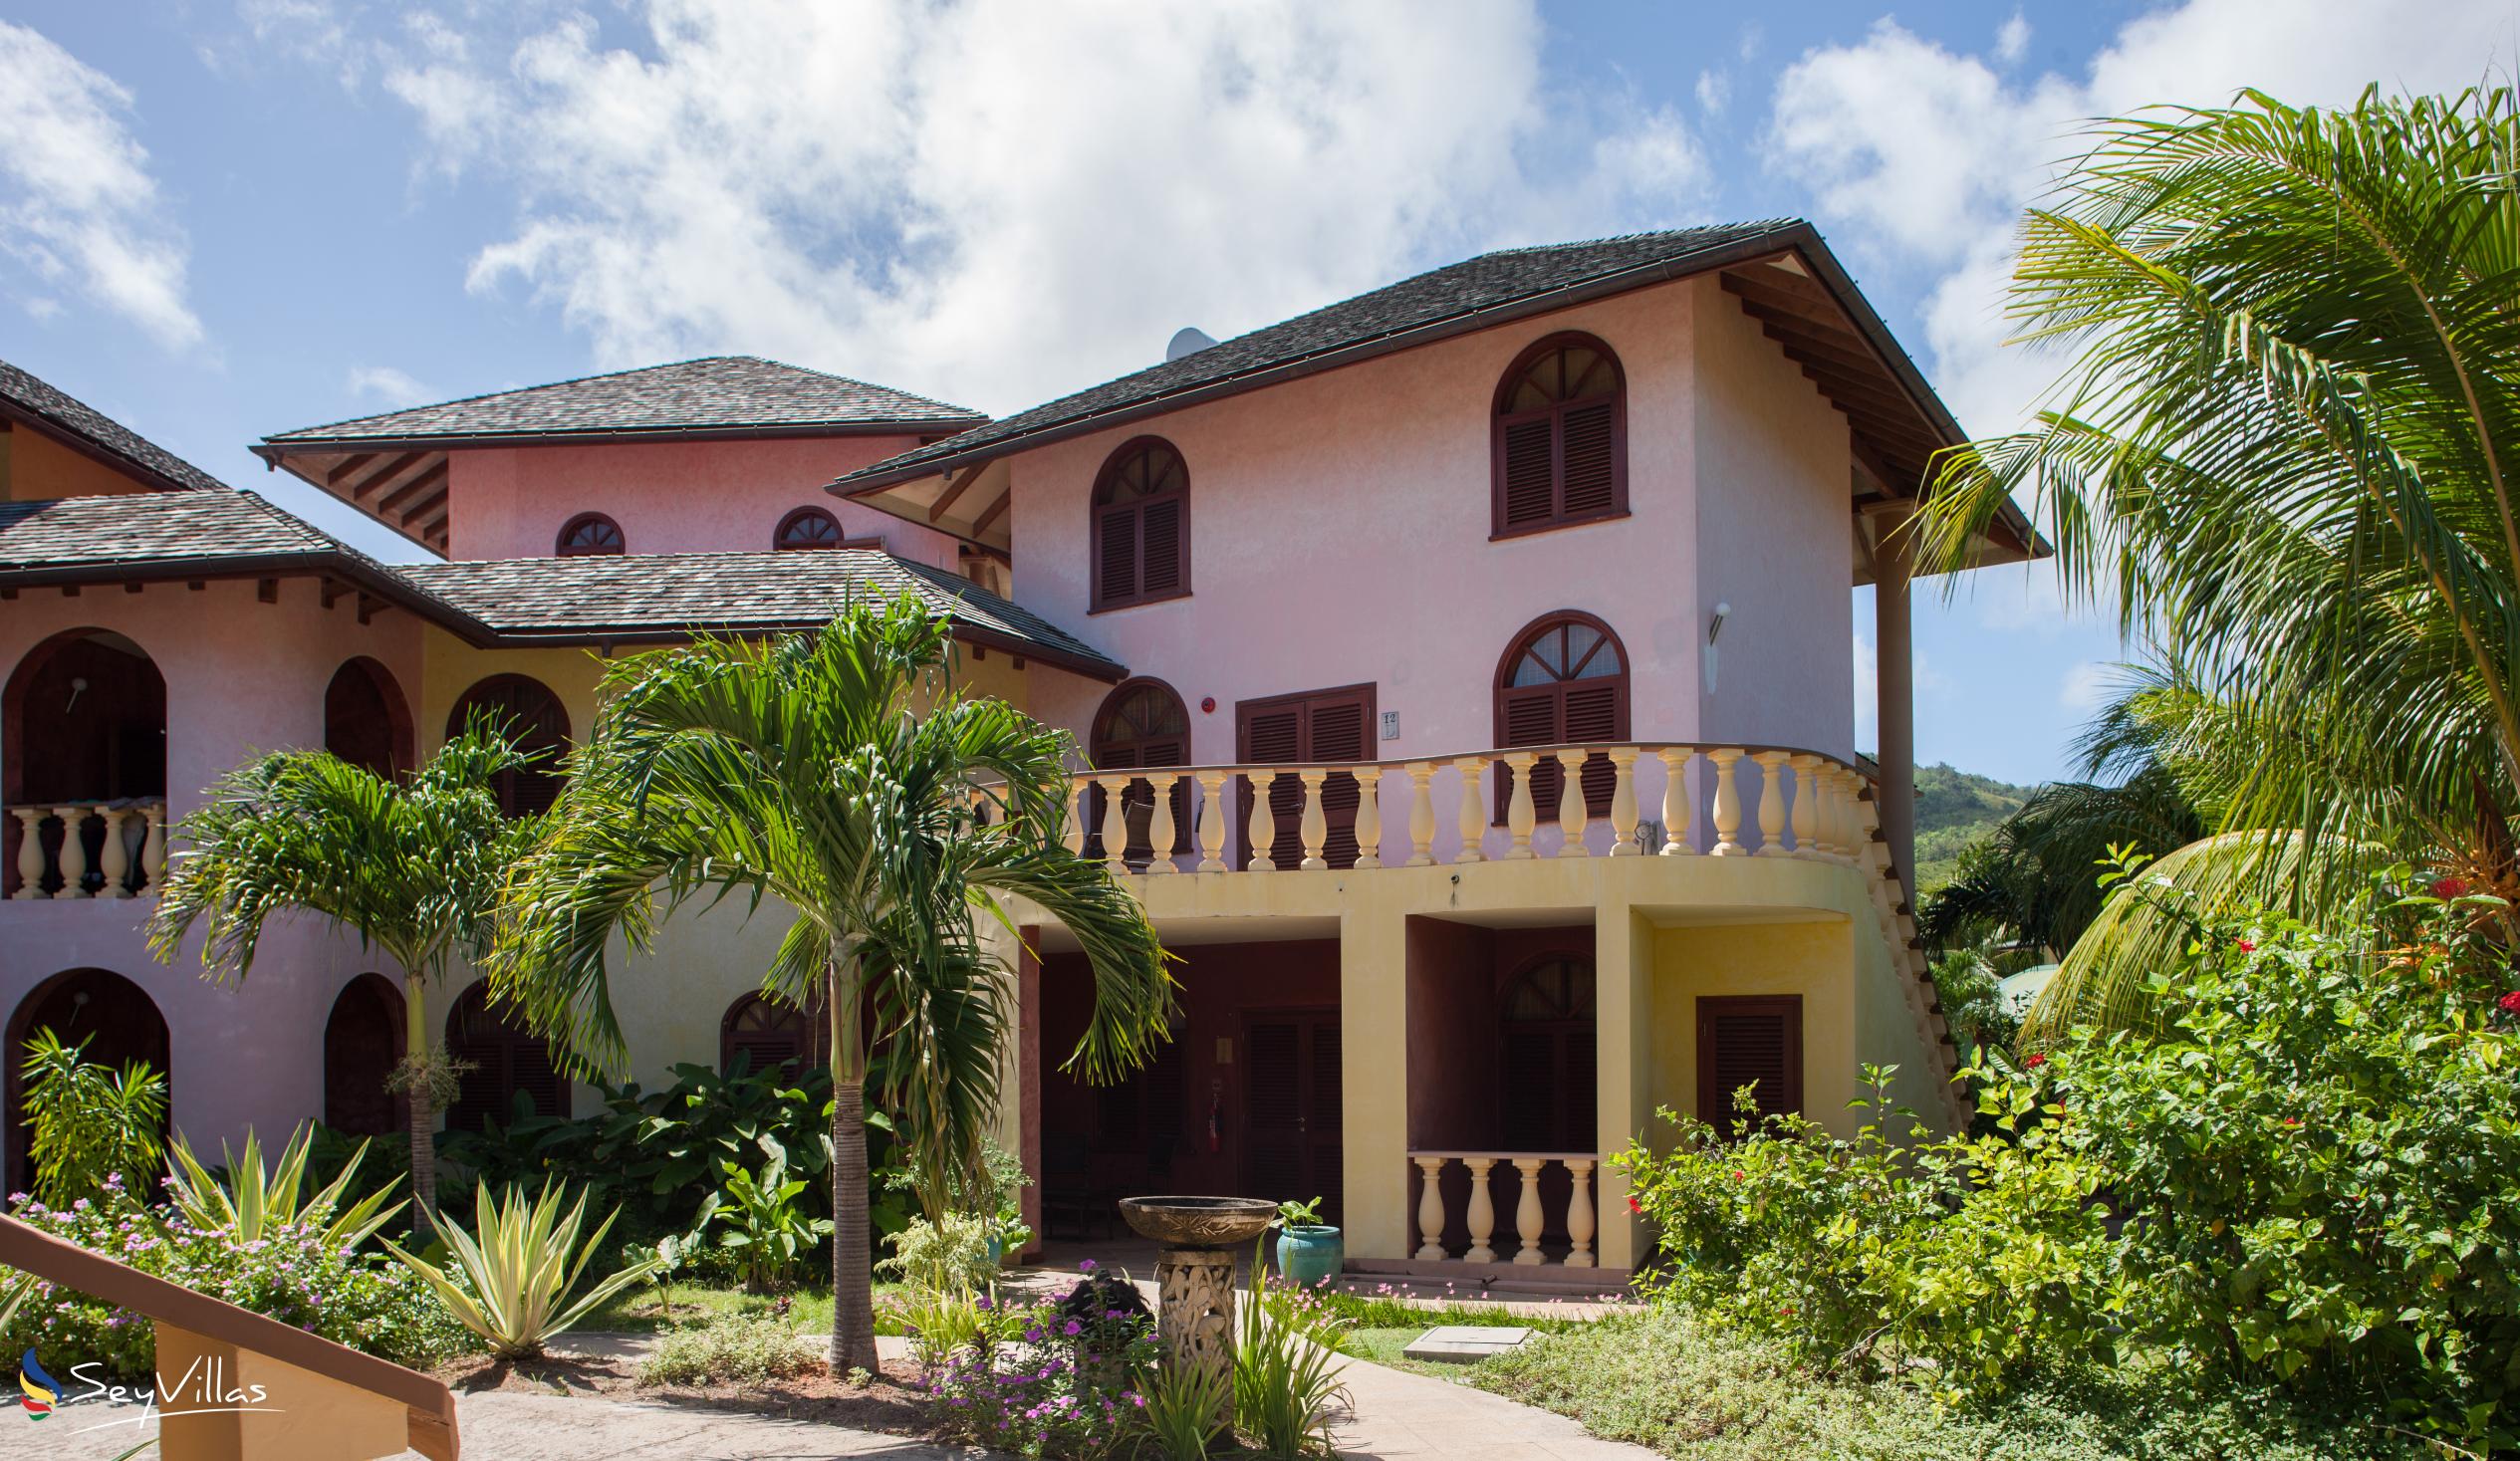 Foto 2: Castello Beach Hotel - Aussenbereich - Praslin (Seychellen)